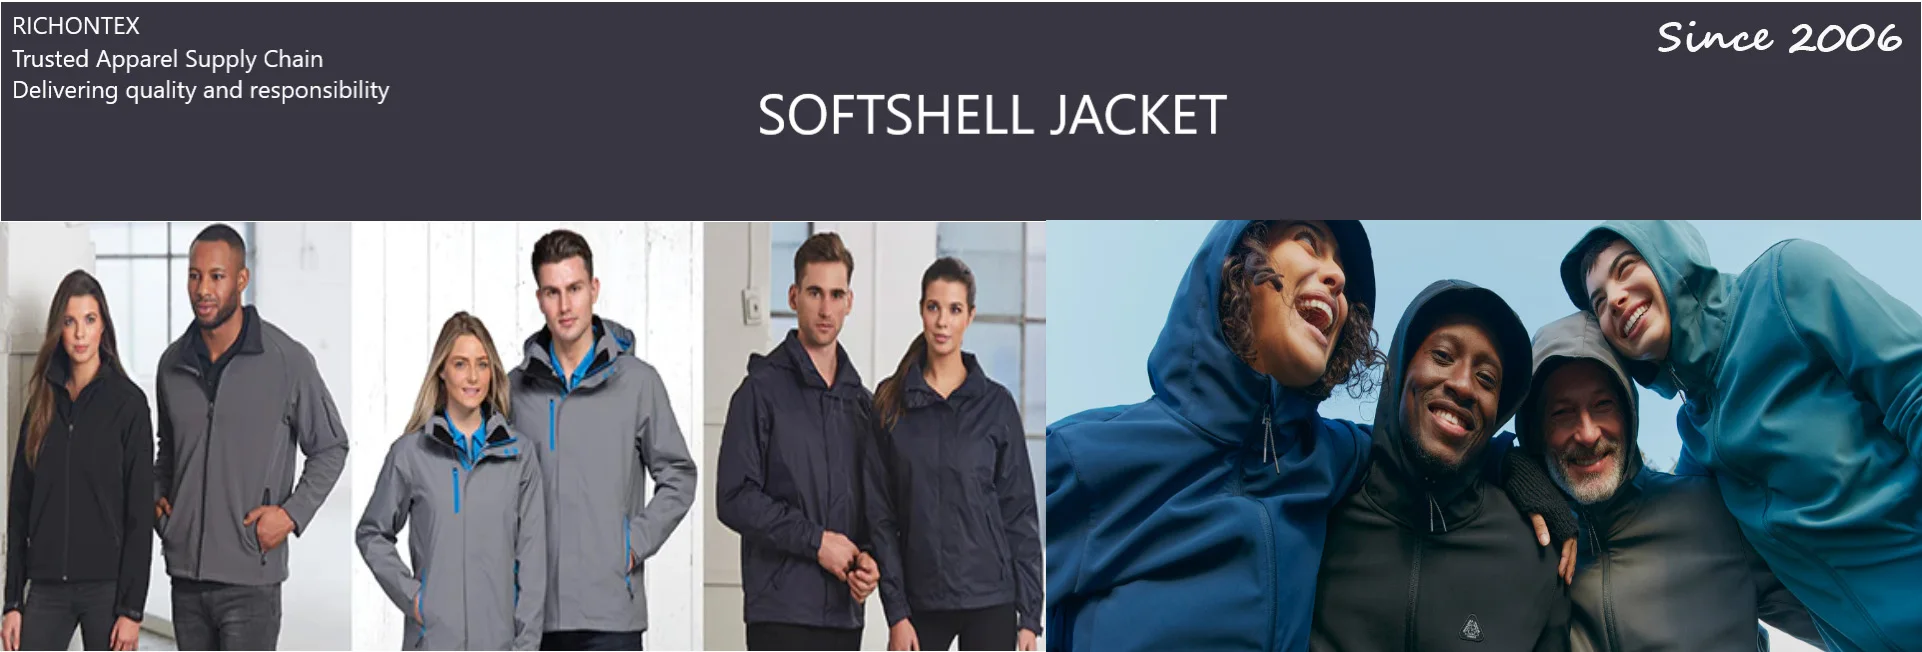 Hangzhou Richontex Co., Ltd. - Polar fleece jacket, Softshell jacket